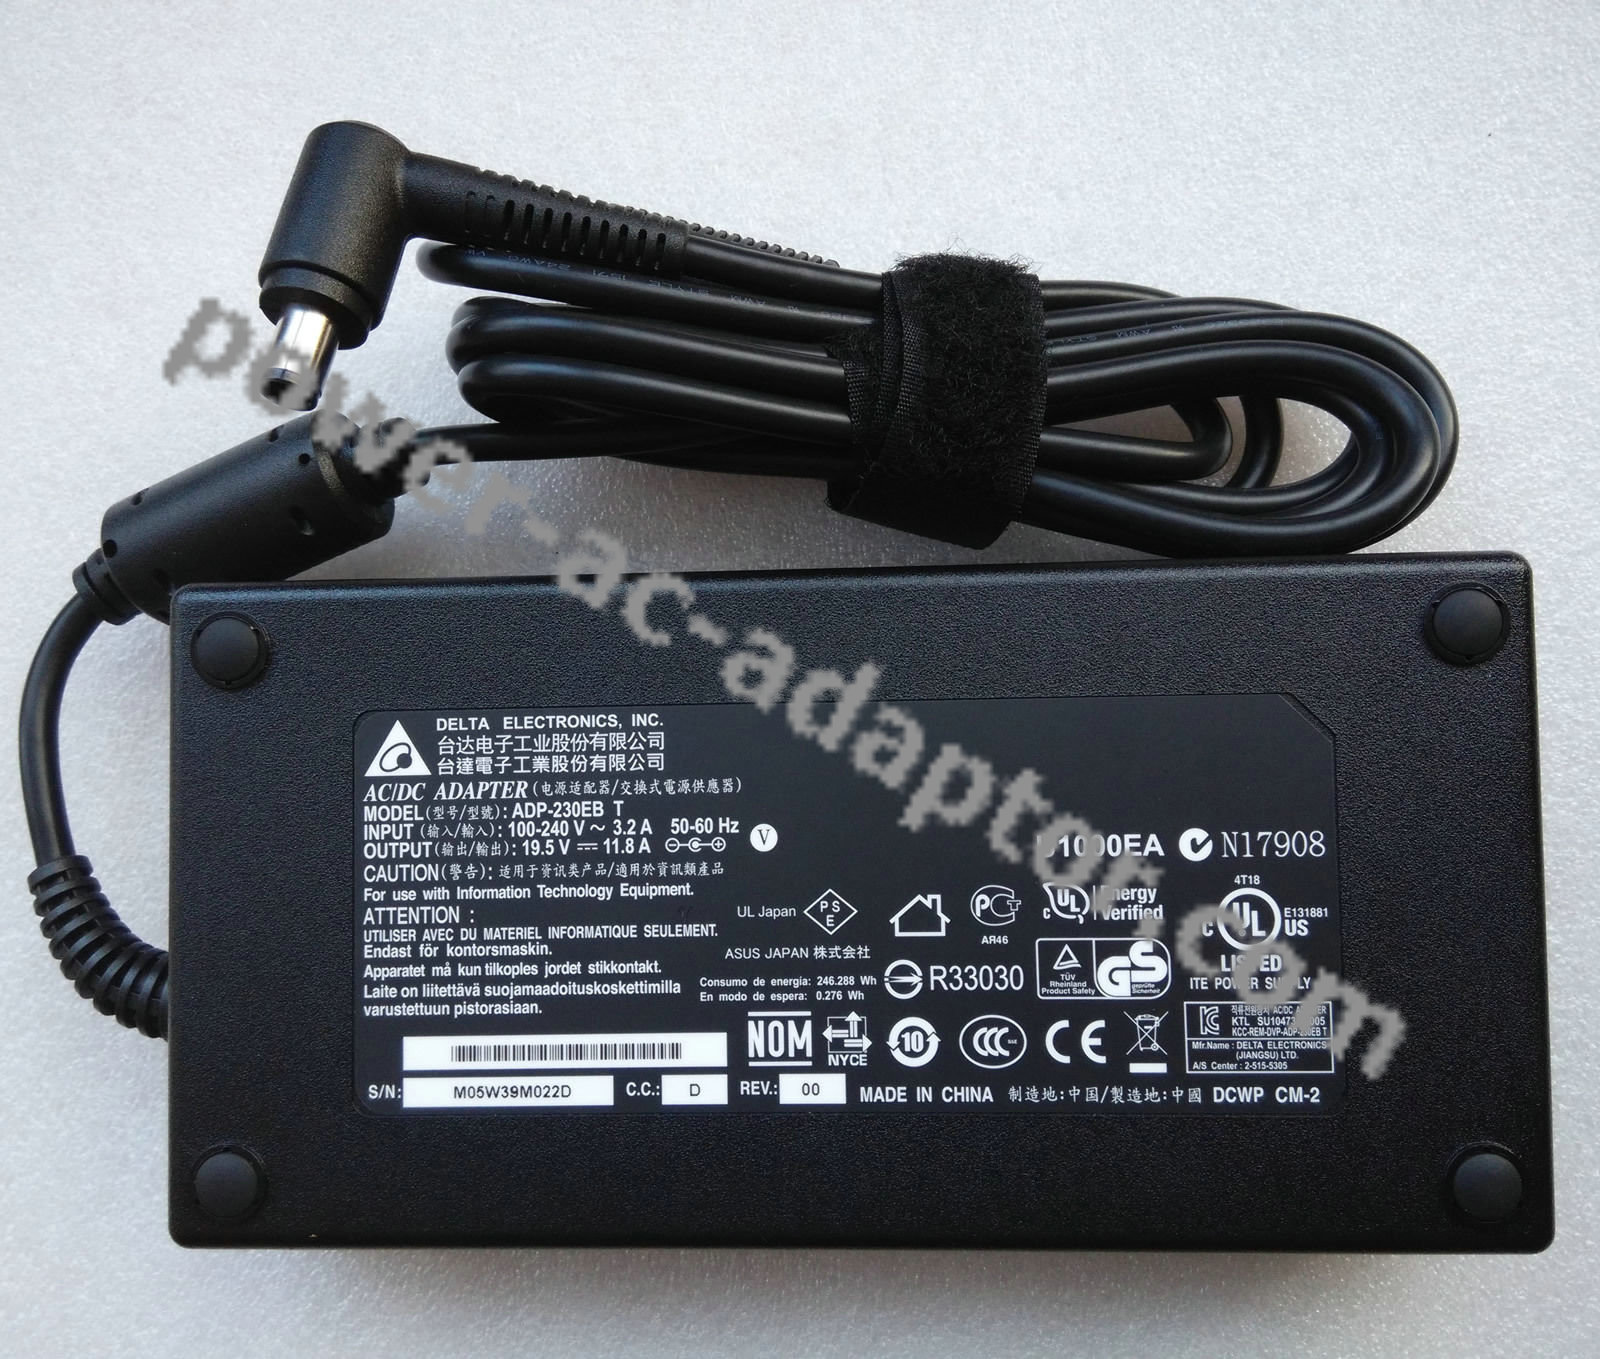 19.5V 11.8A power Cord/Charger ASUS G750JH-DB71 Gaming Laprtop